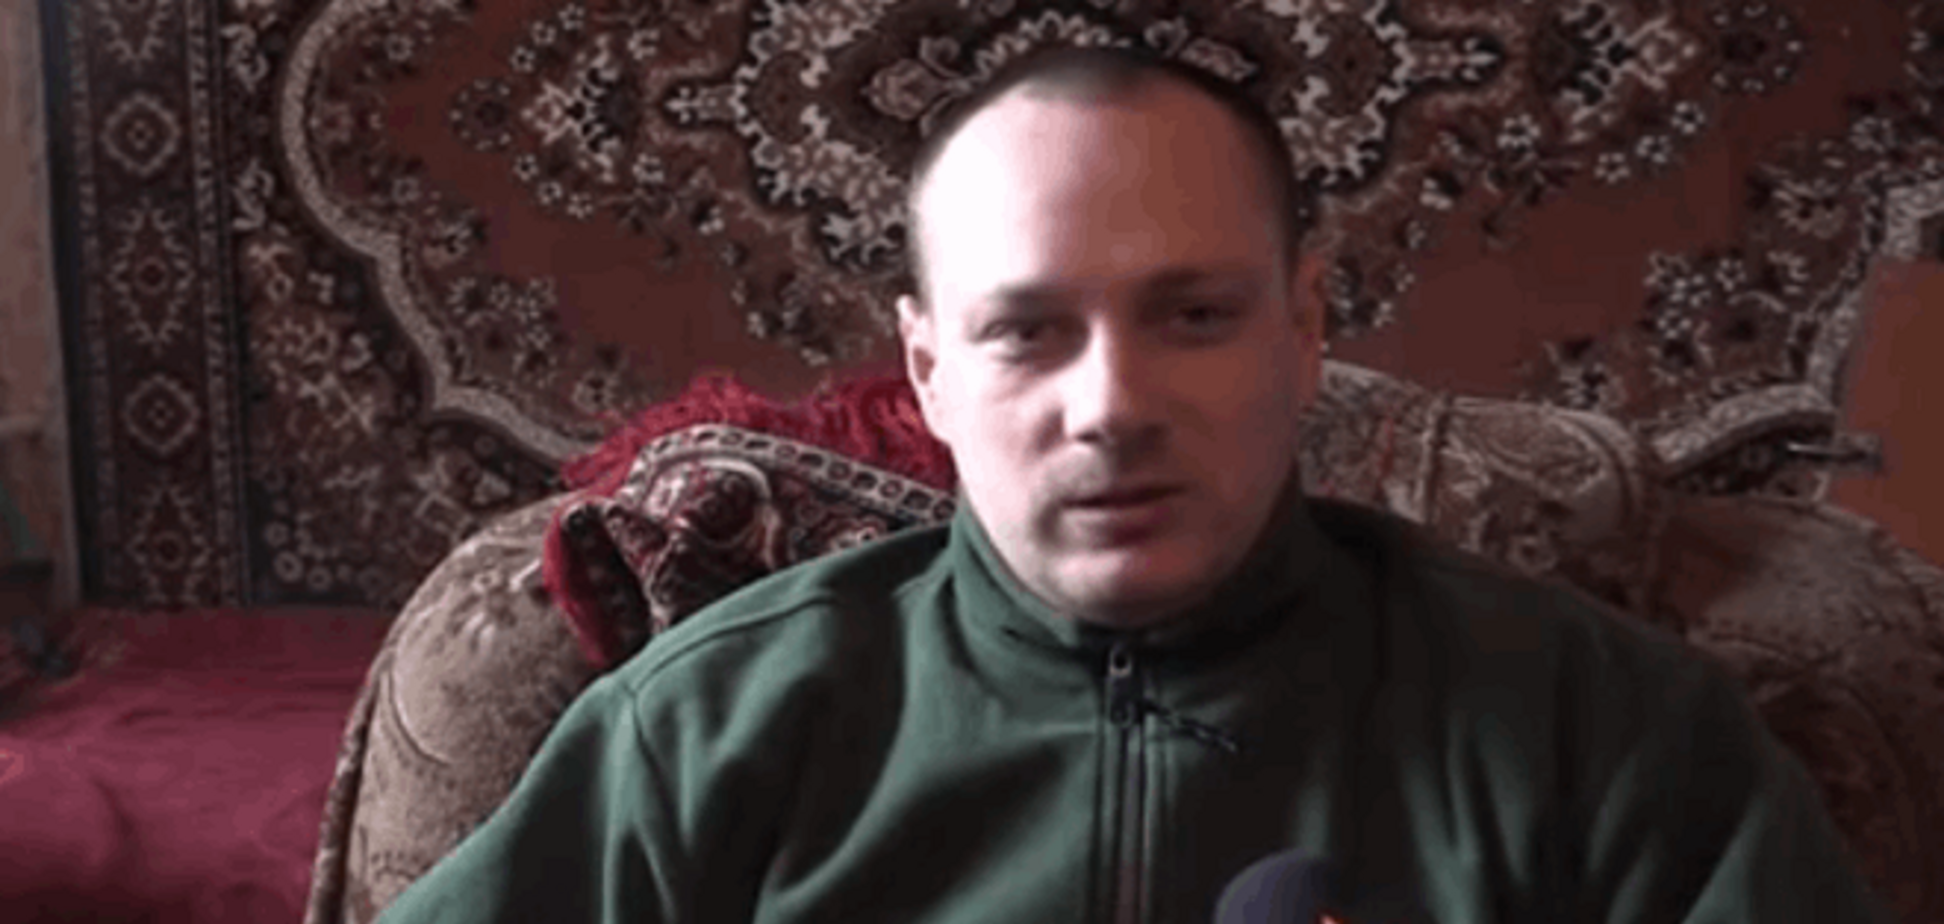 Российские СМИ обманули пленного бойца АТО ради давления на его семью: опубликовано видео